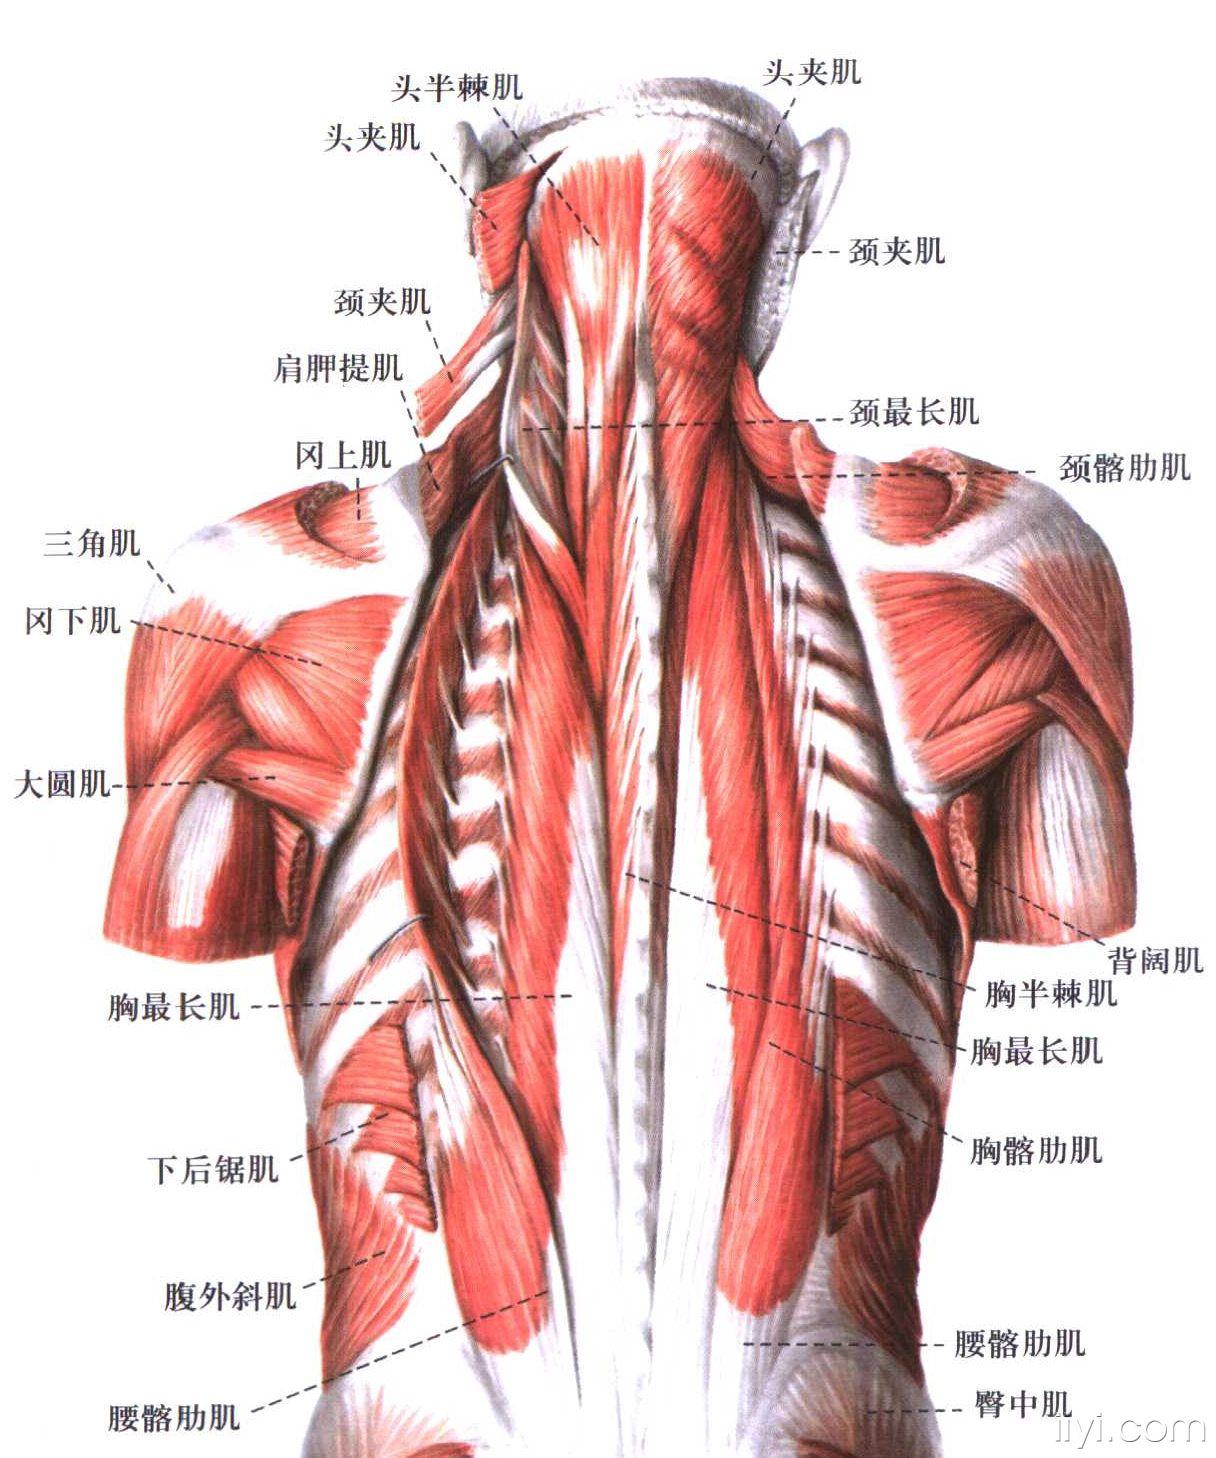 中医针推外治版 69 颈椎后部的肌肉解剖 b最长肌:为骶棘肌的一部分